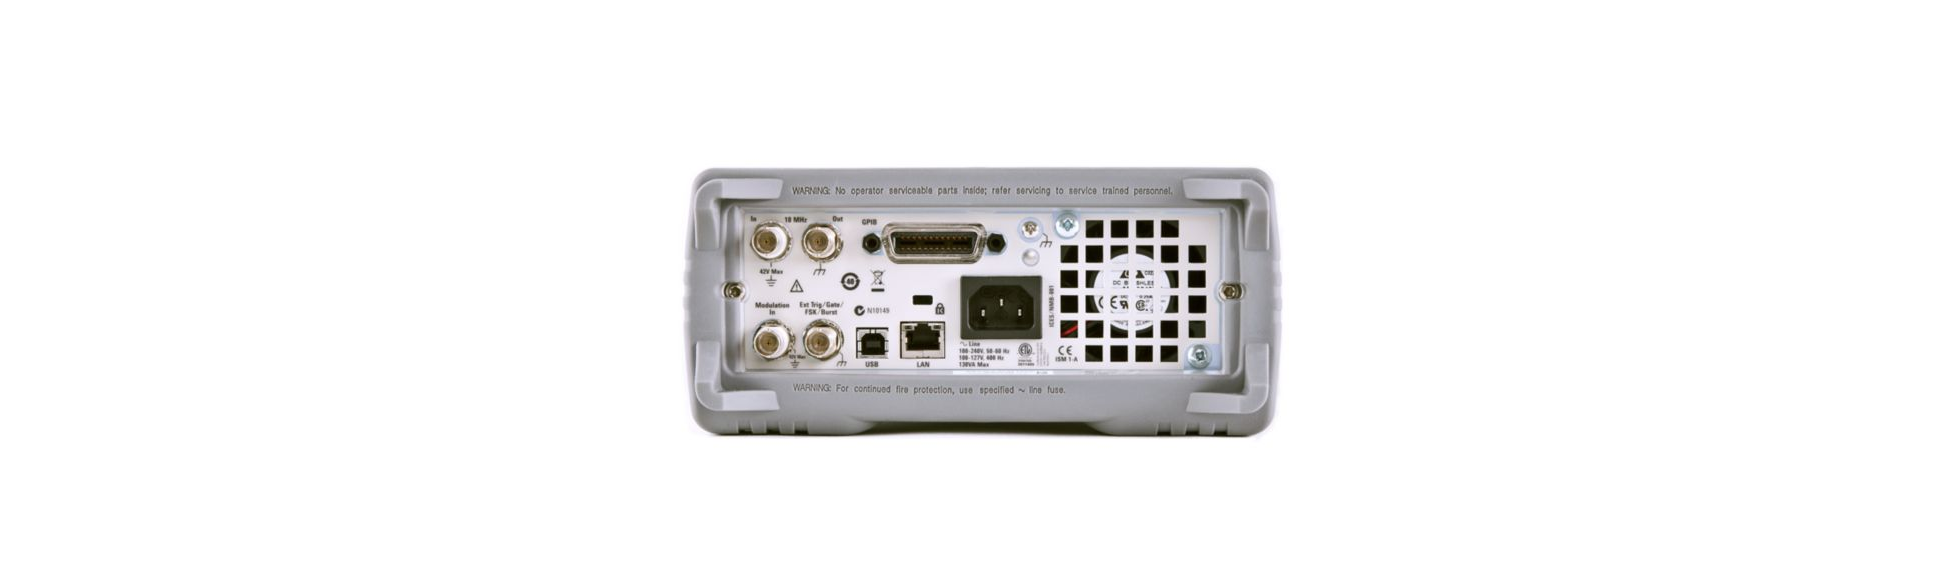 Генераторы сигналов Keysight серии 33500B с возможностью генерации сигналов произвольной формы